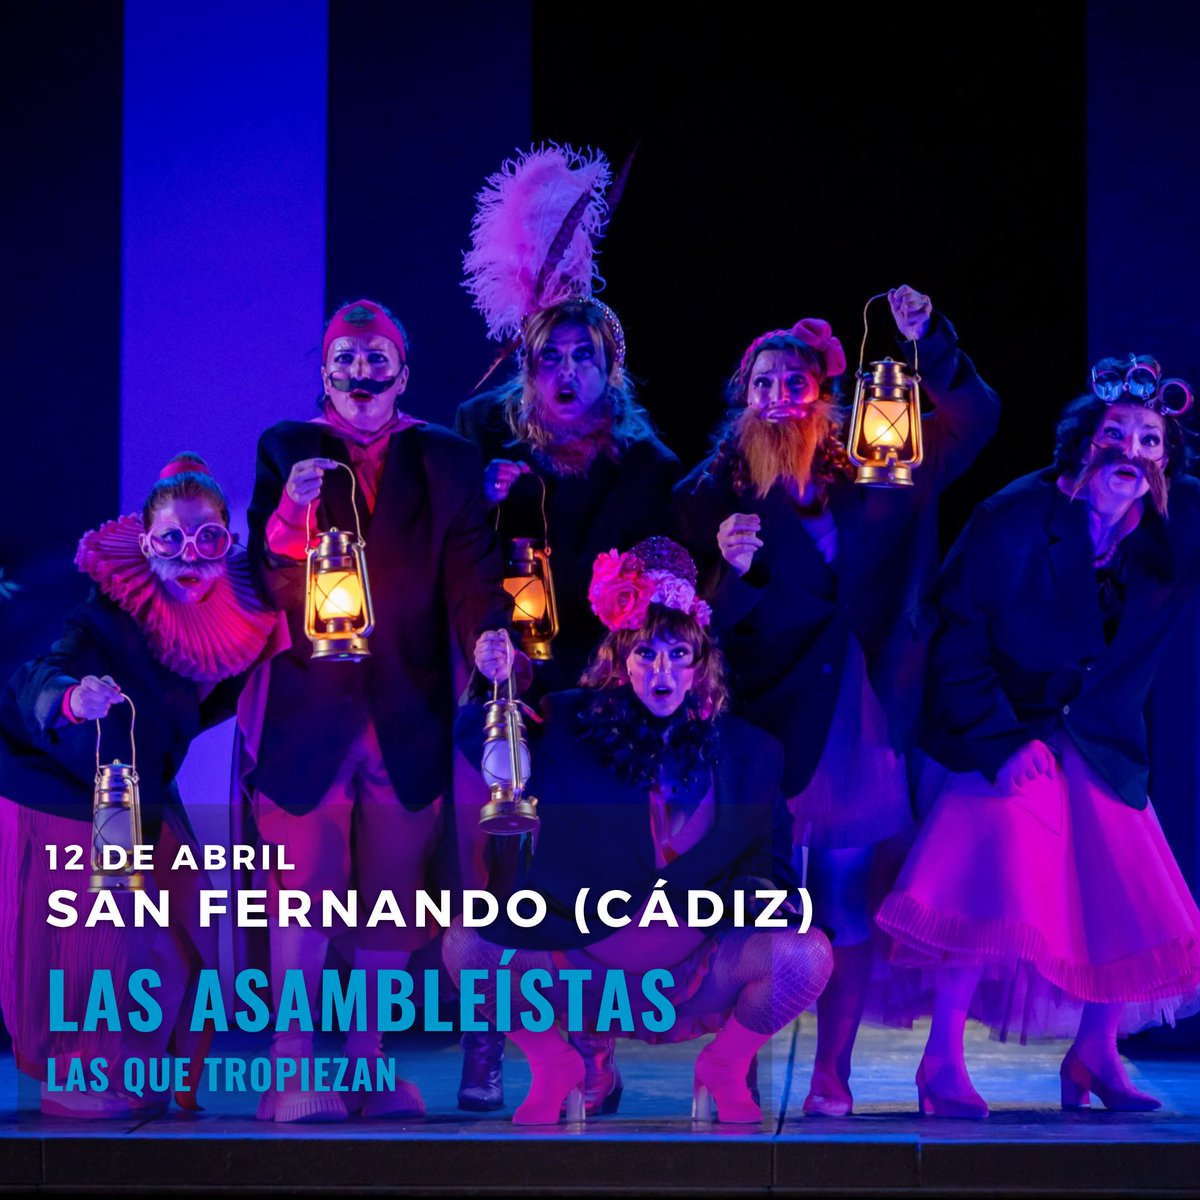 El 12 de abril 🗓️, #LasAsambleístas llegan al Teatro de Las Cortes de San Fernando (Cádiz) 📍 Una comedia que reflexiona sobre el papel de las mujeres a lo largo de la historia y sus tropiezos que no te puedes perder 😁 ¡Te esperamos en el teatro!🎭 @JCimarro @ElTerratTeatro